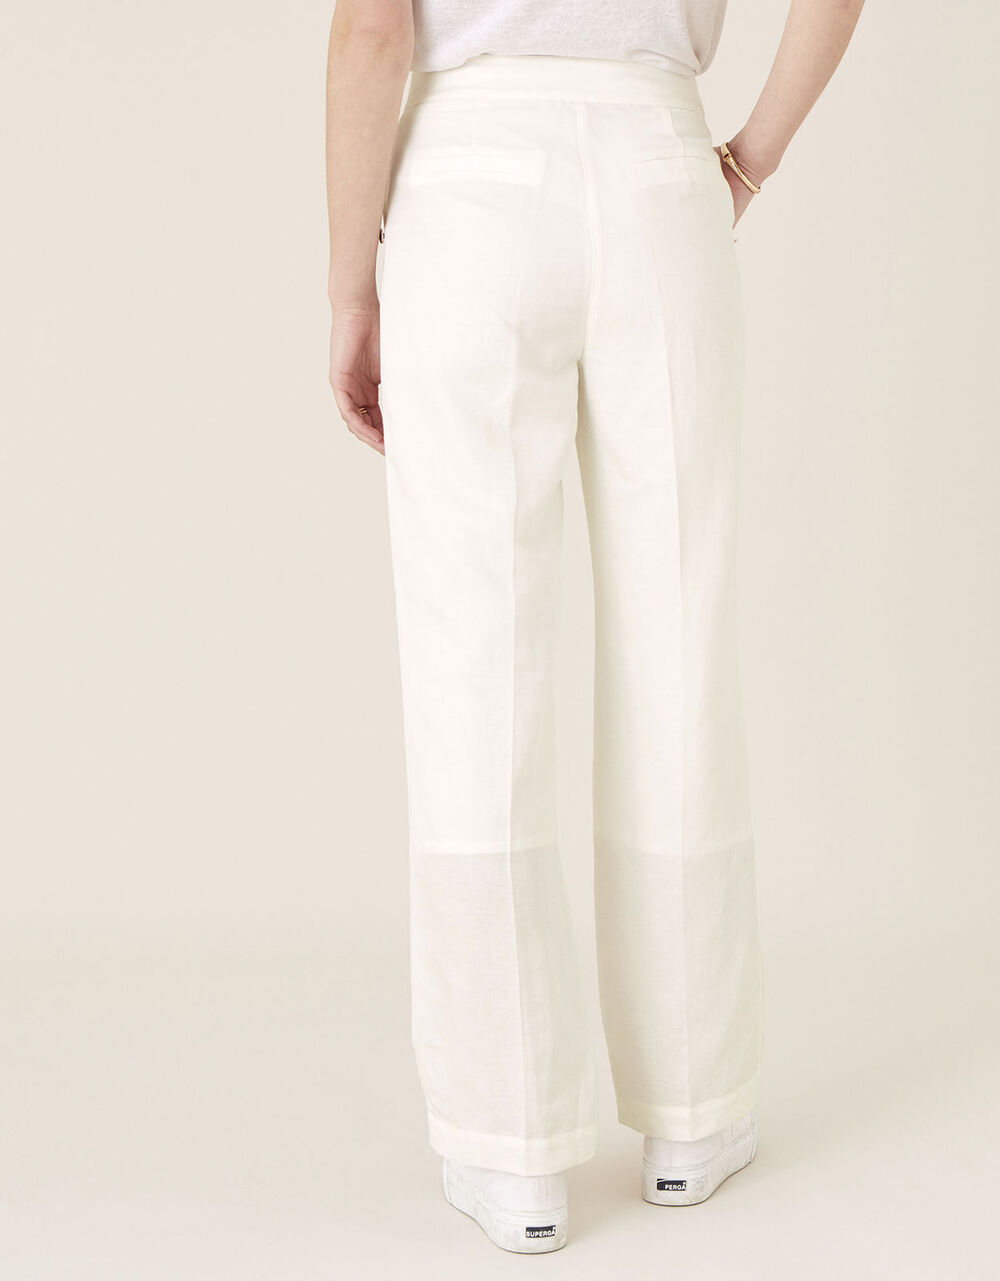 Smart Shorter Length Trousers in Linen Blend White | Trousers ...